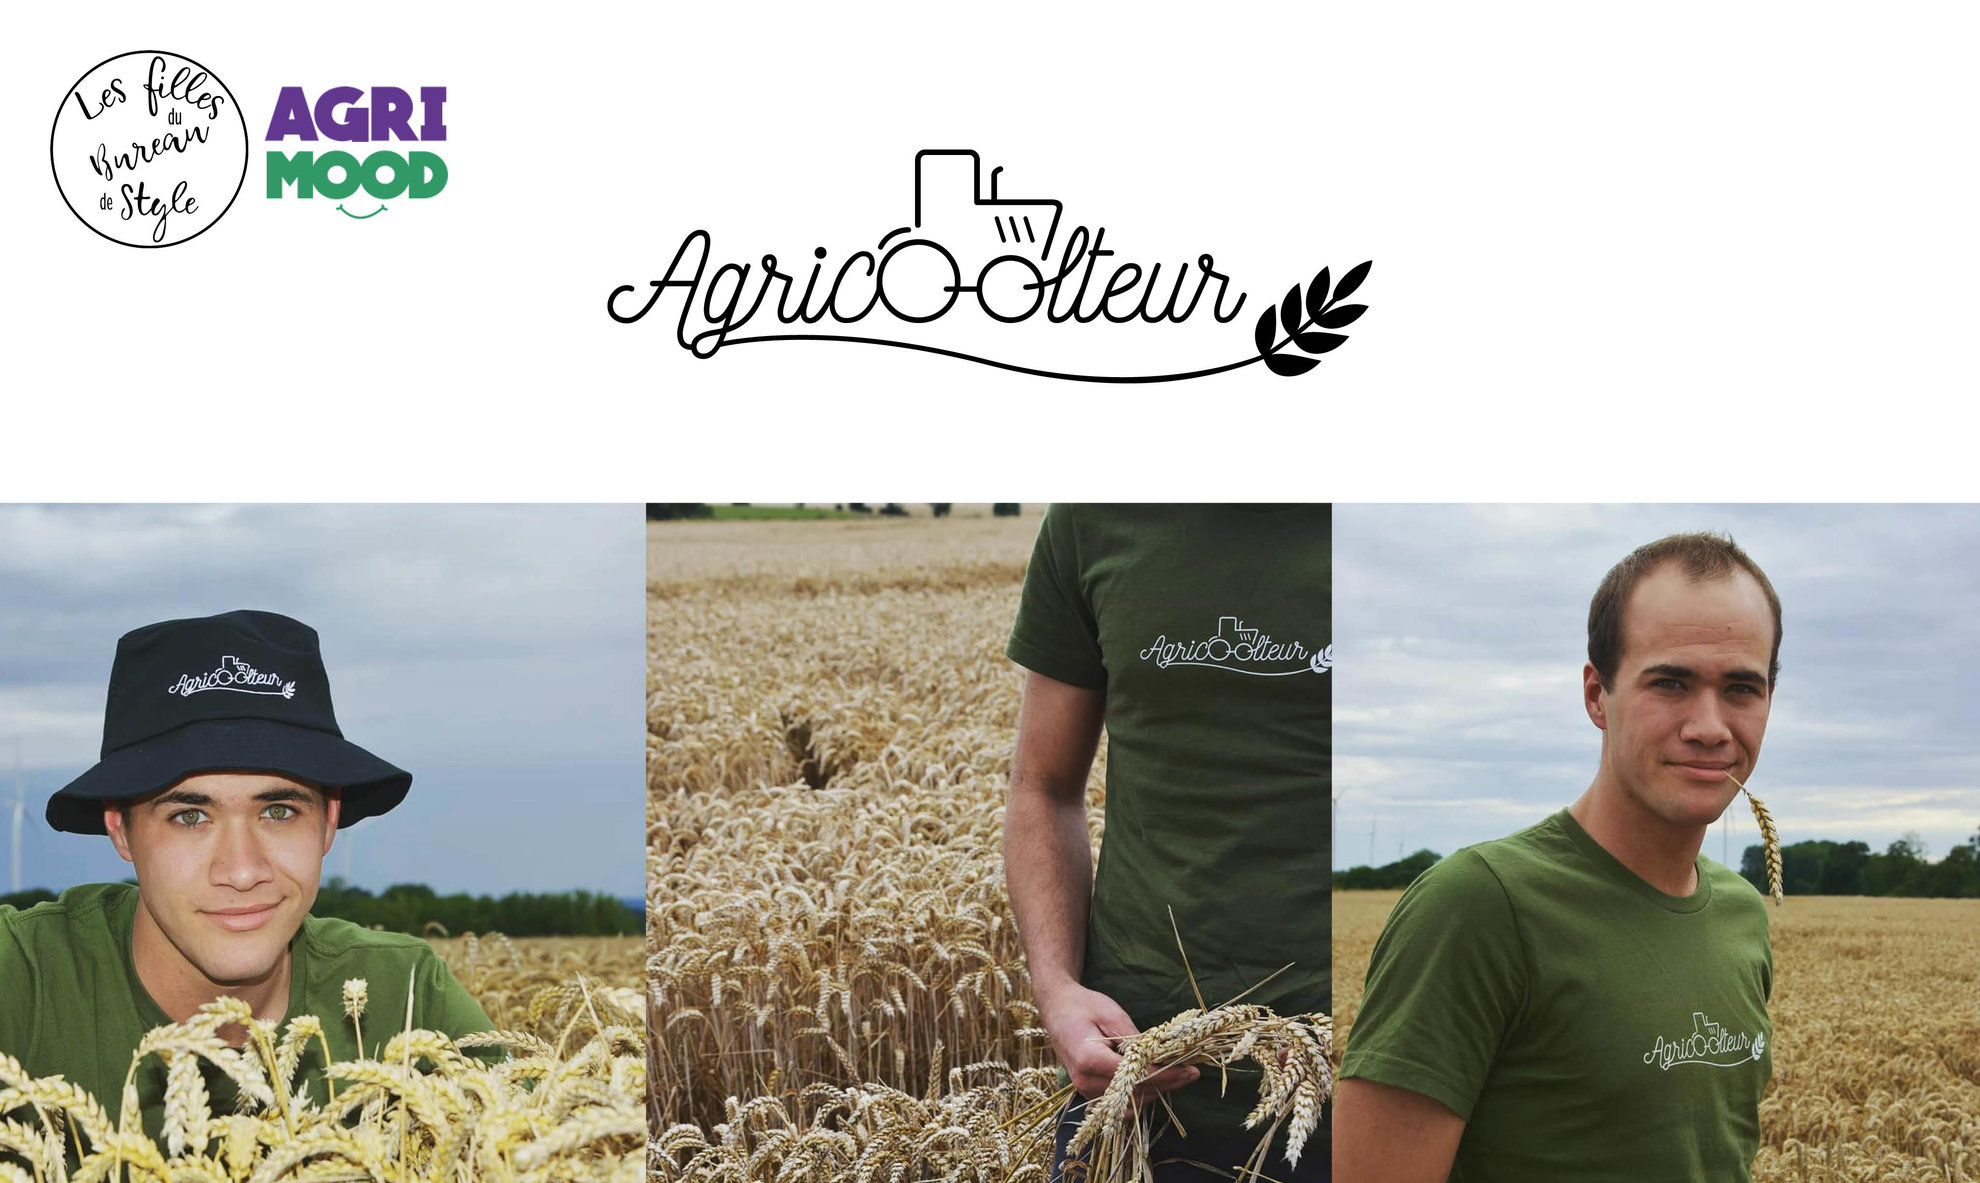 Agricoolteur logo textile et communication.